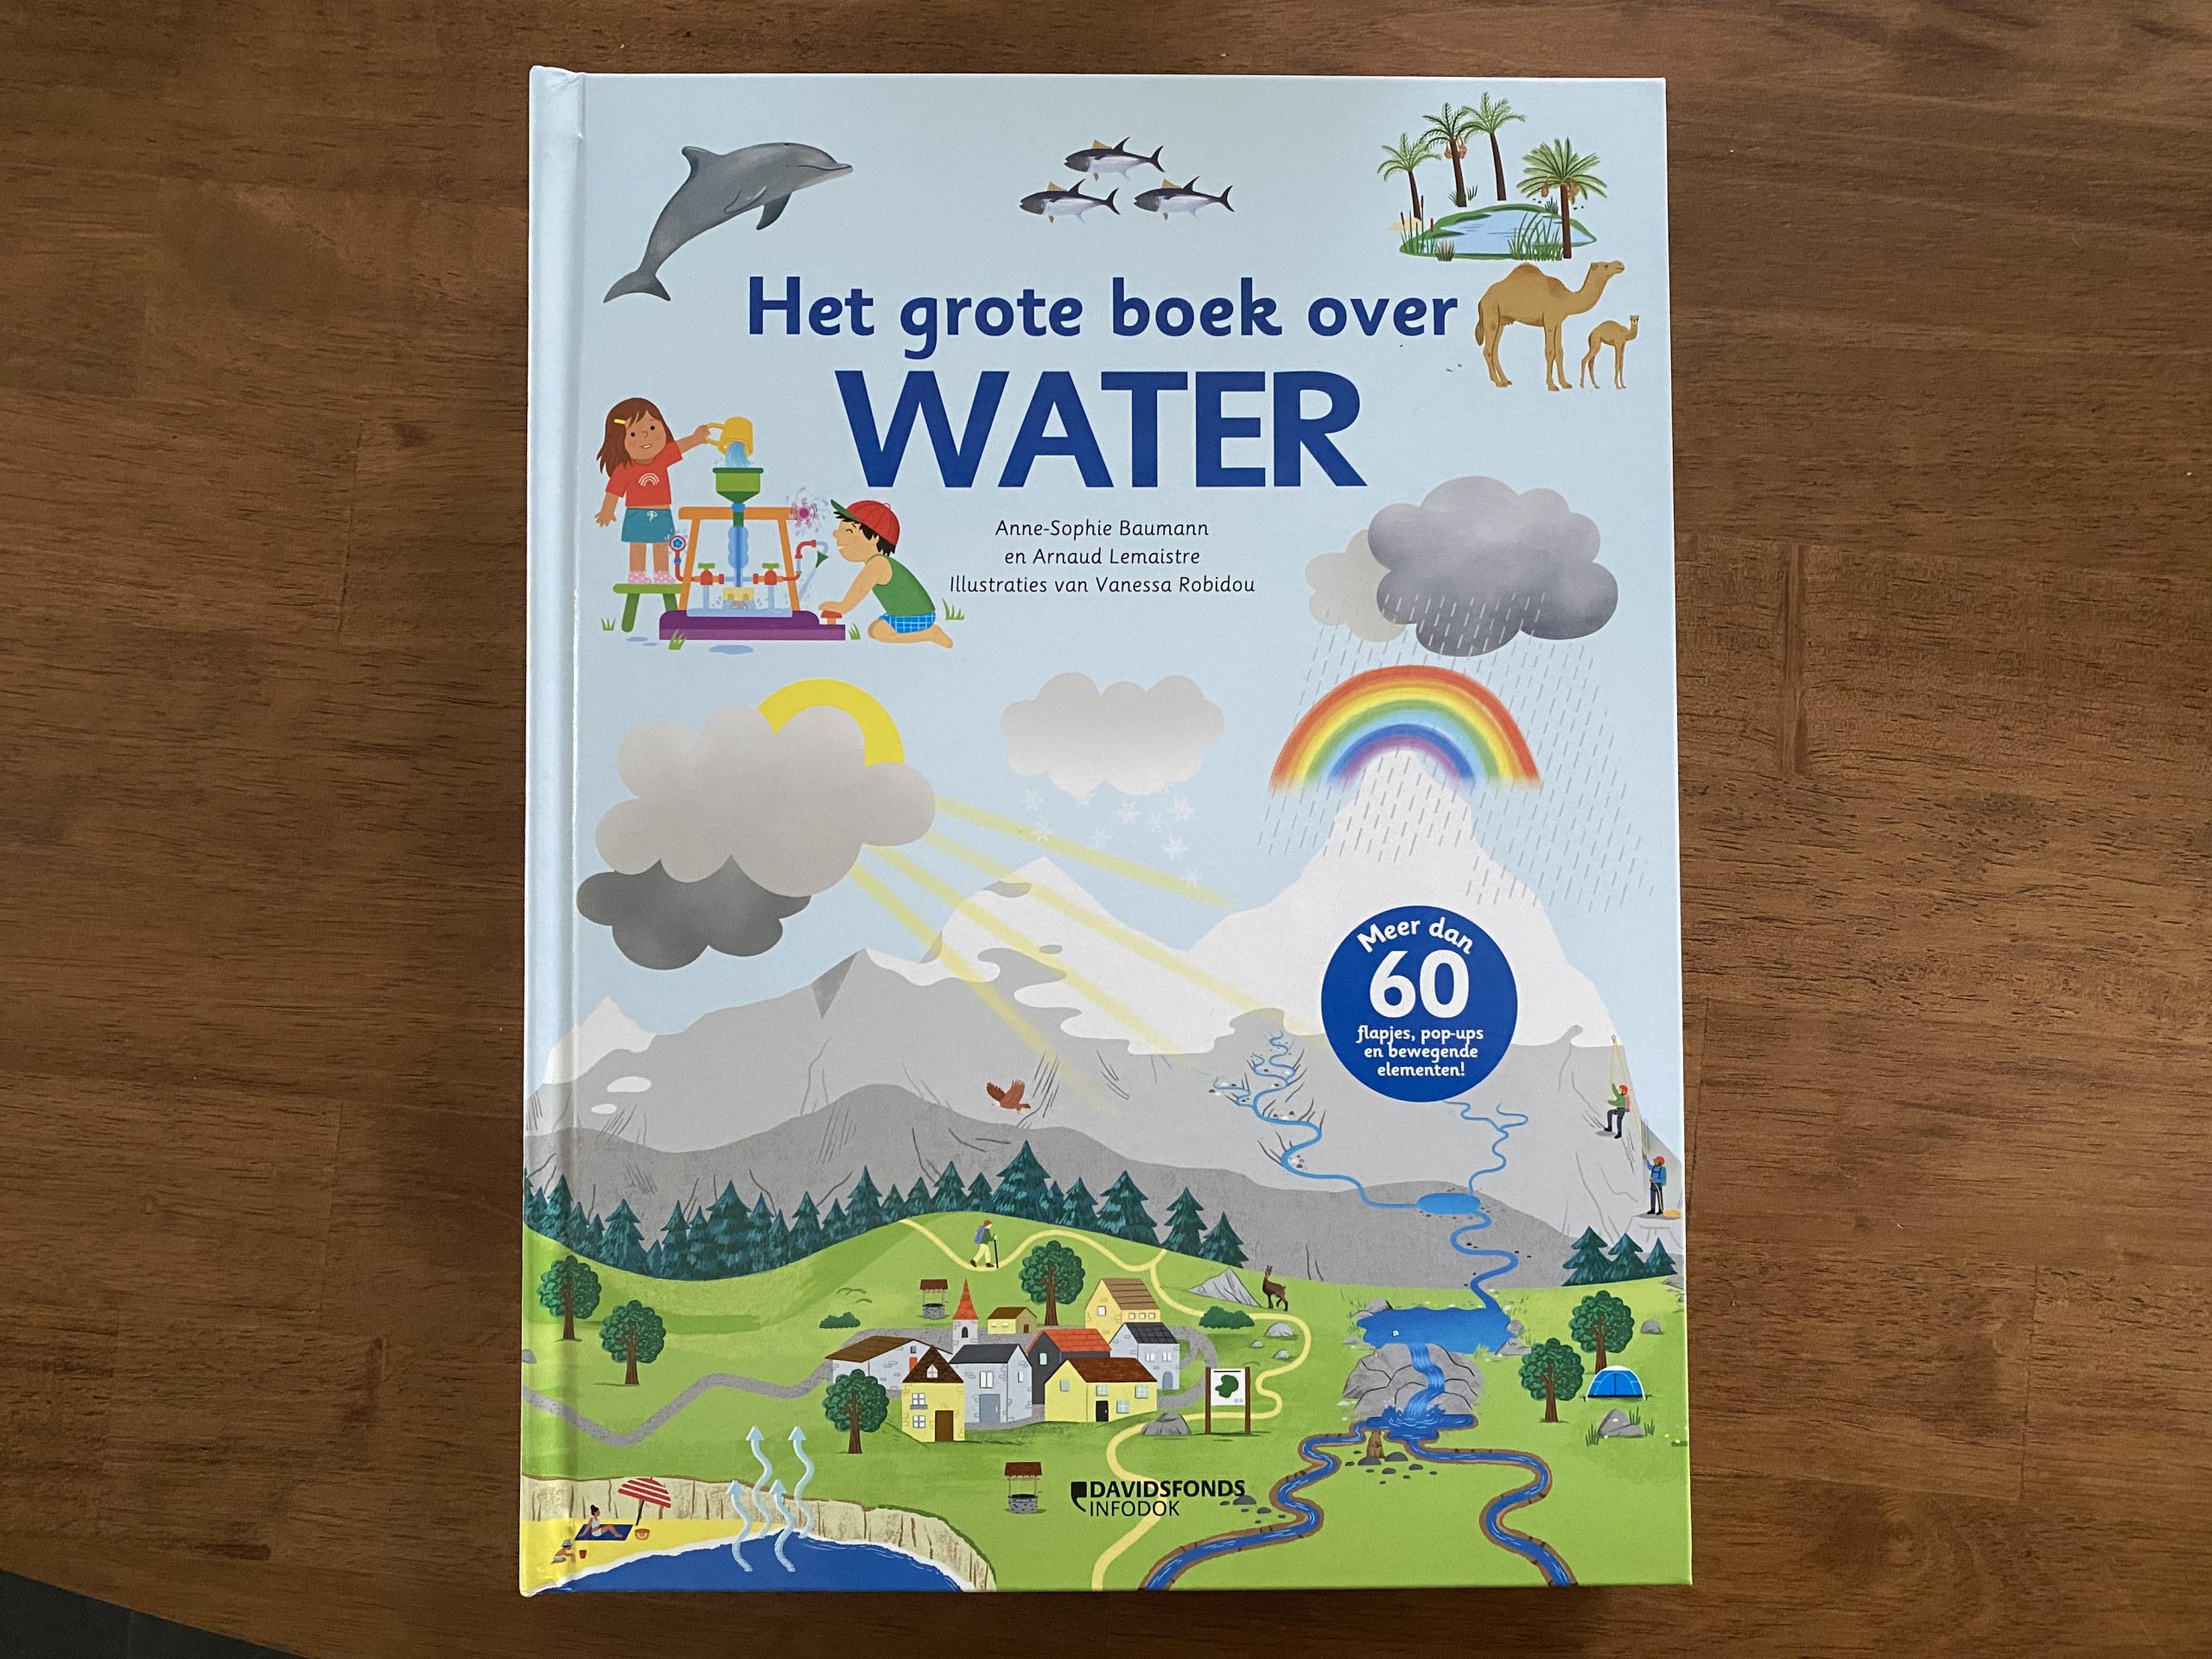 Het grote boek over WATER met meer dan 60 flapjes, pop-ups en bewegende elementen